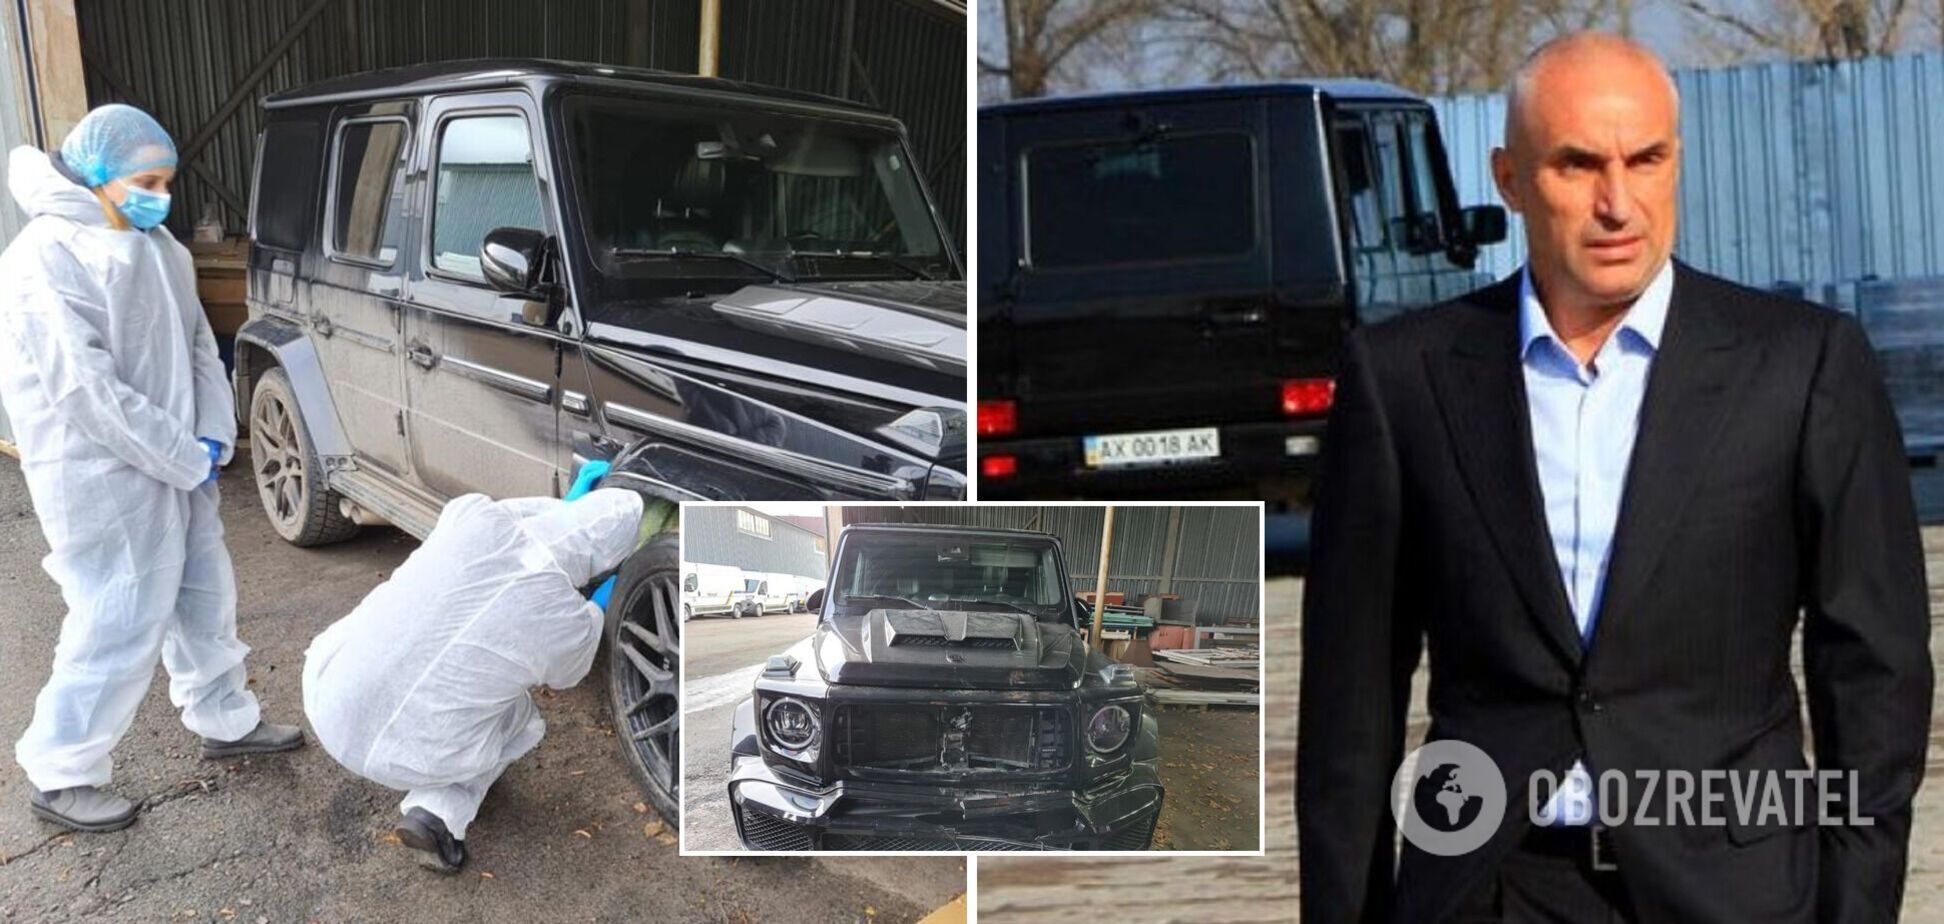 Сліди ДТП намагалися приховати: експерти оглянули авто із кортежу Ярославського. Фото